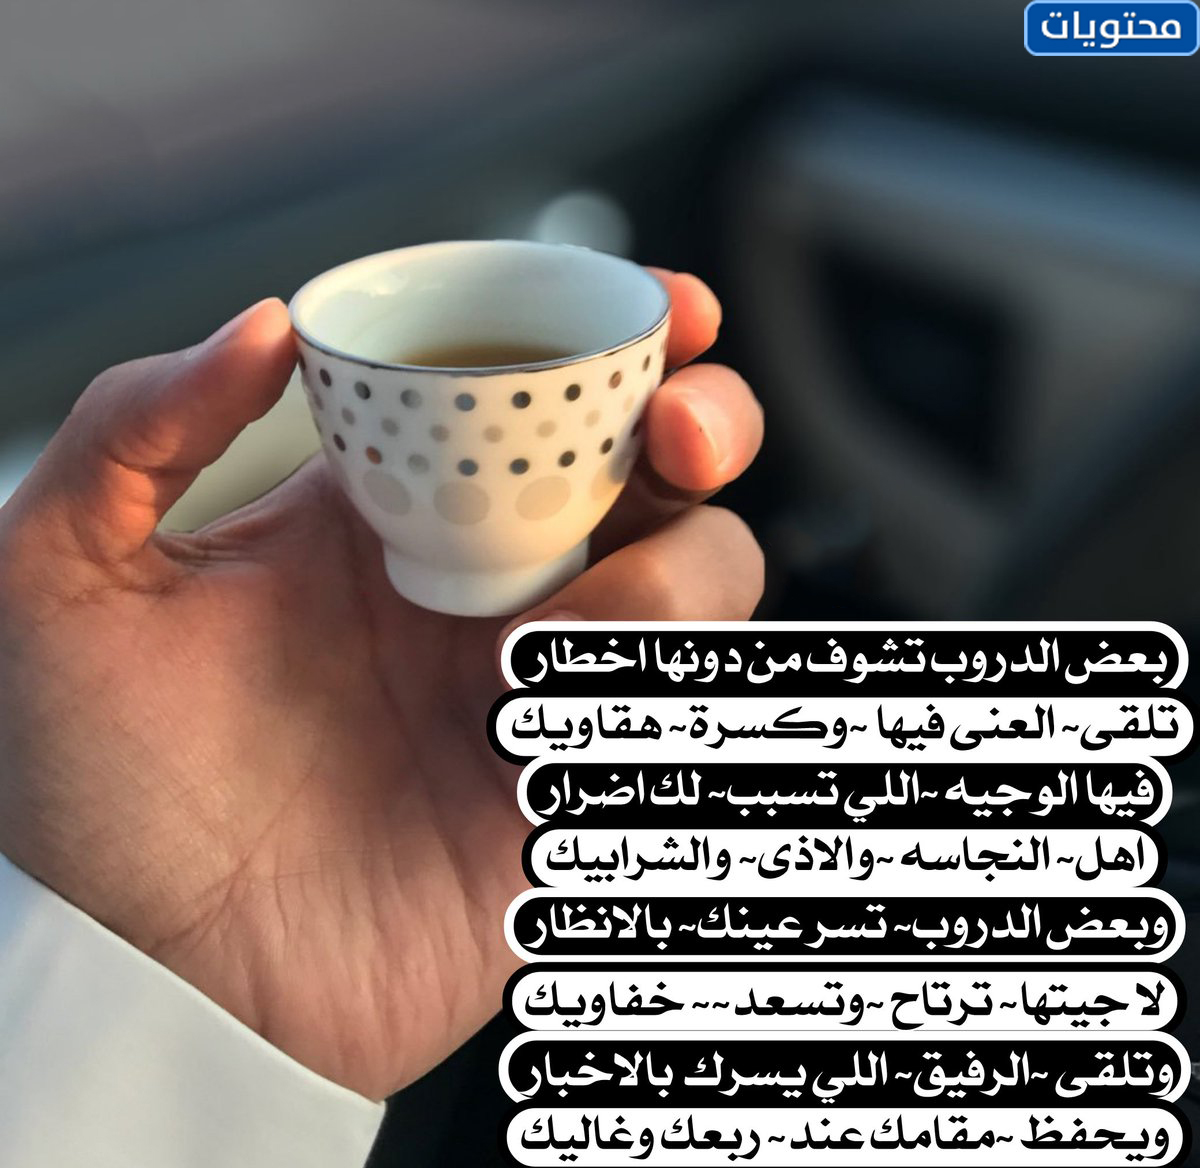 صور شعر بدوي عن القهوة العربية